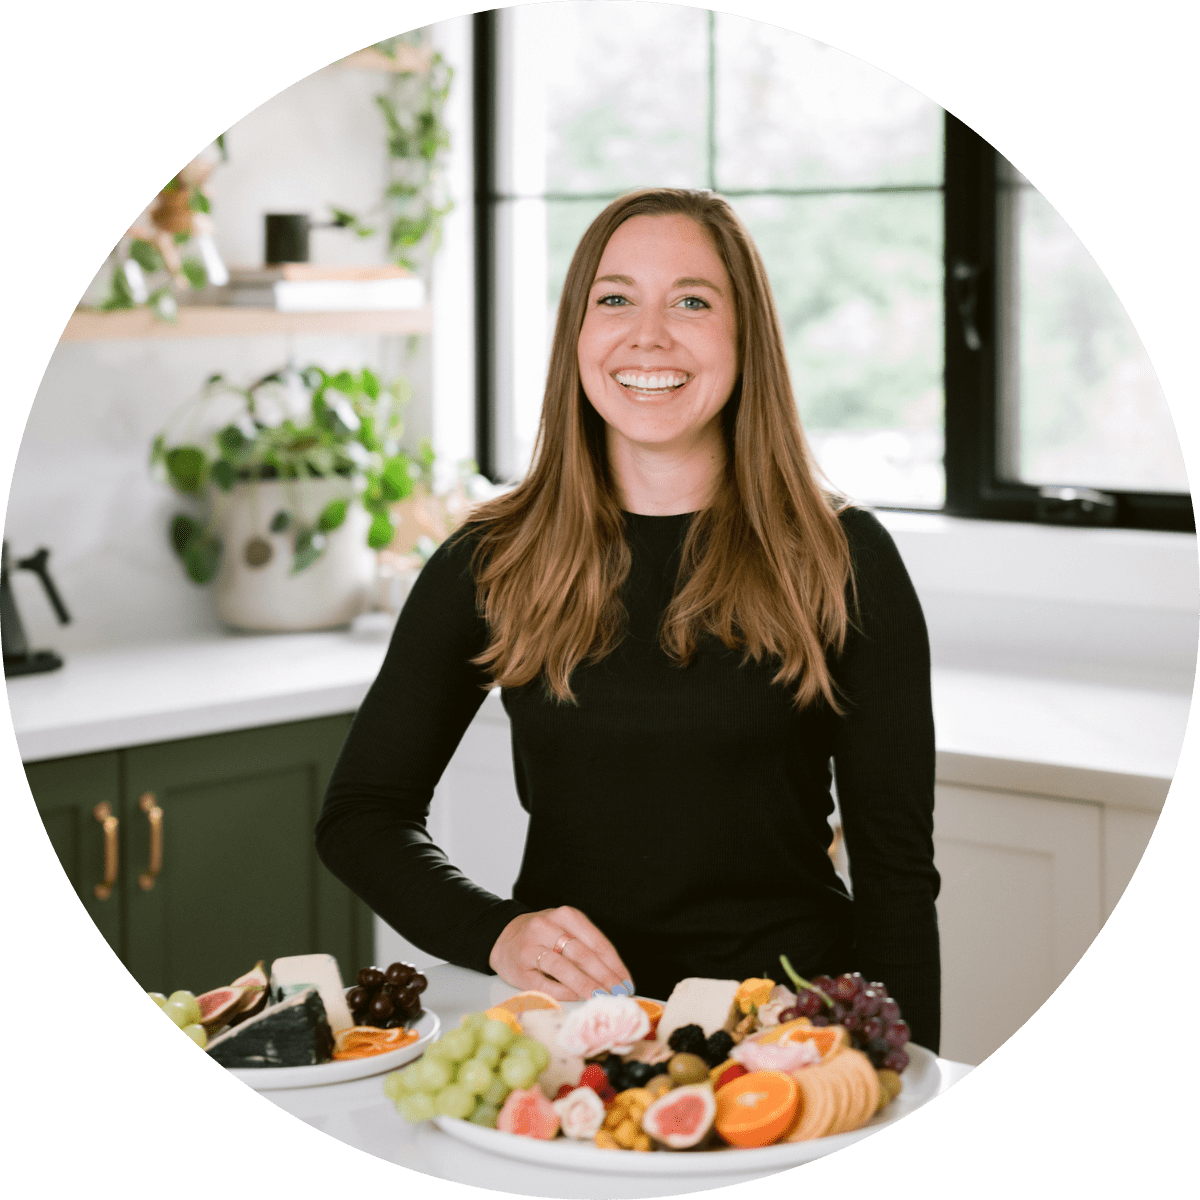 La fondatrice de Nuts For Cheese, Margaret Coons, souriant dans une cuisine derrière une assiette de fromage végétalien et de fruits frais.